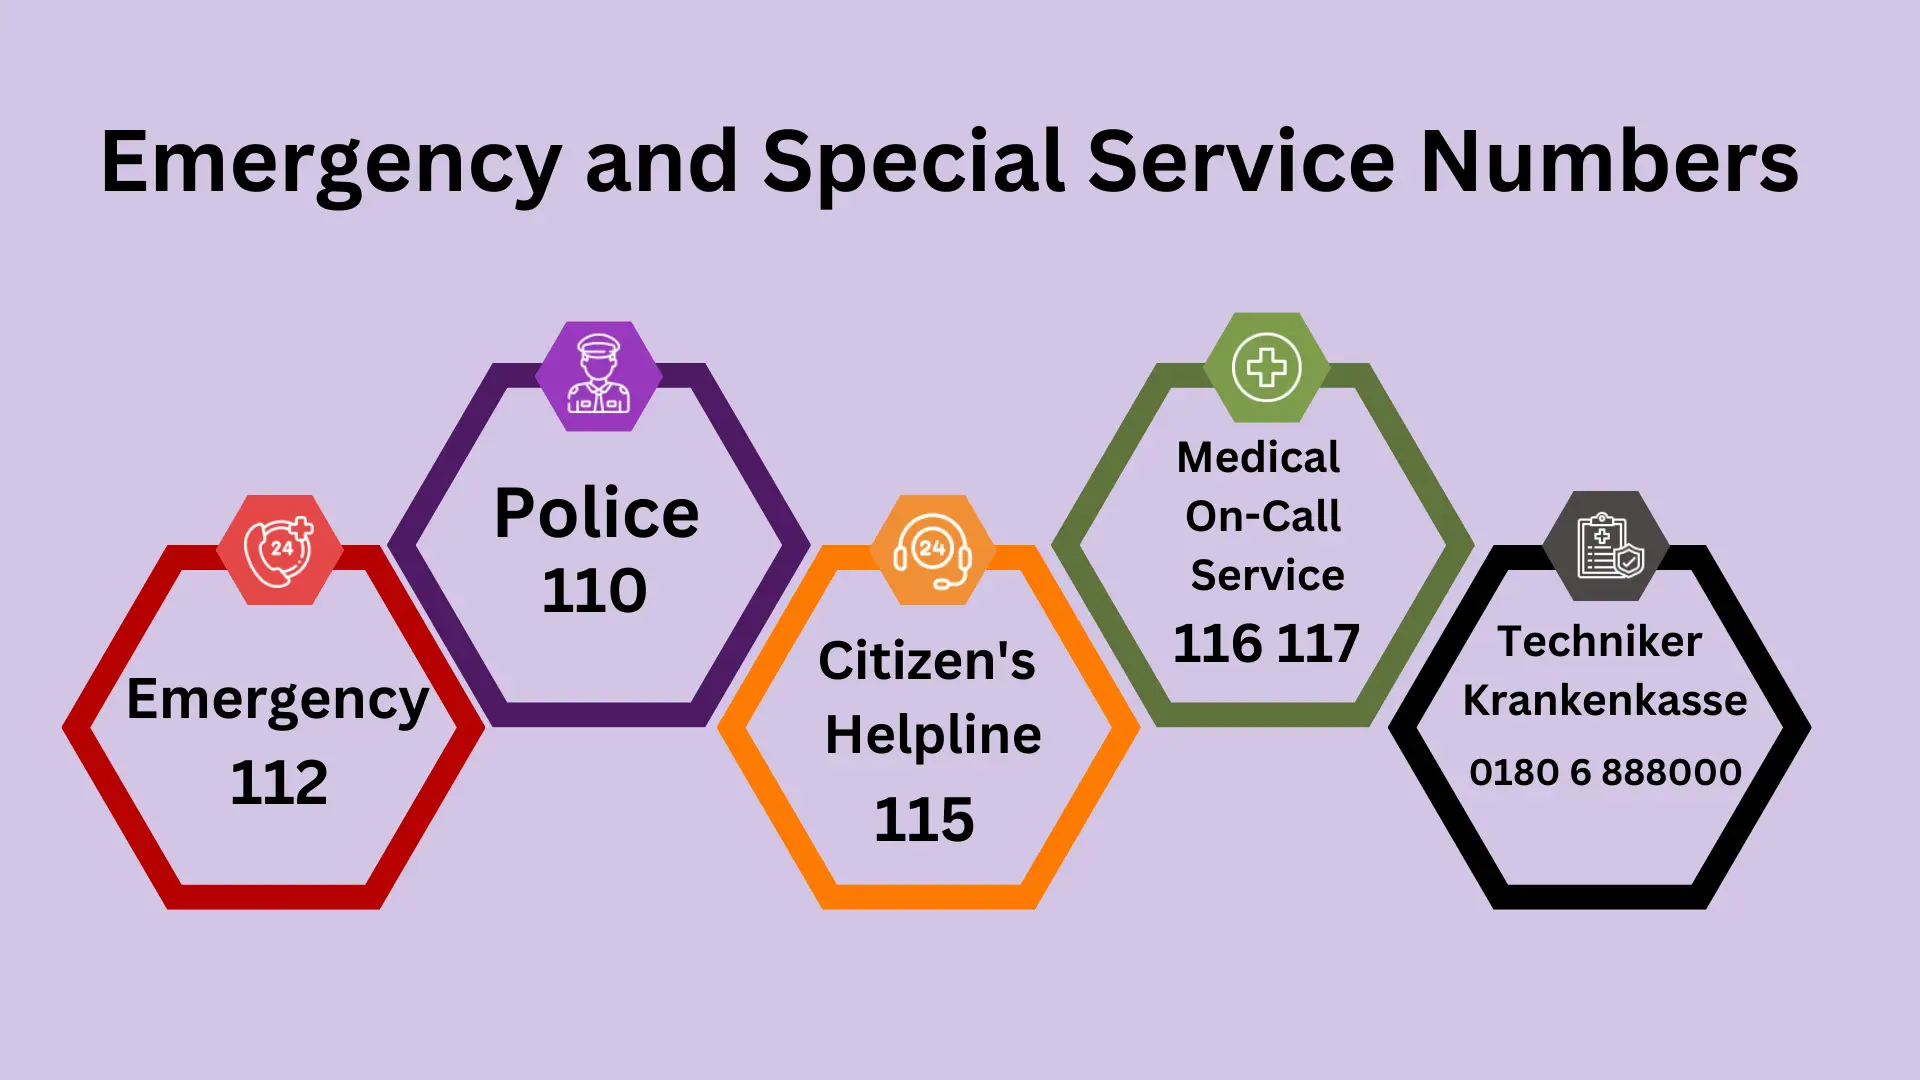 Numeri di emergenza e servizi speciali